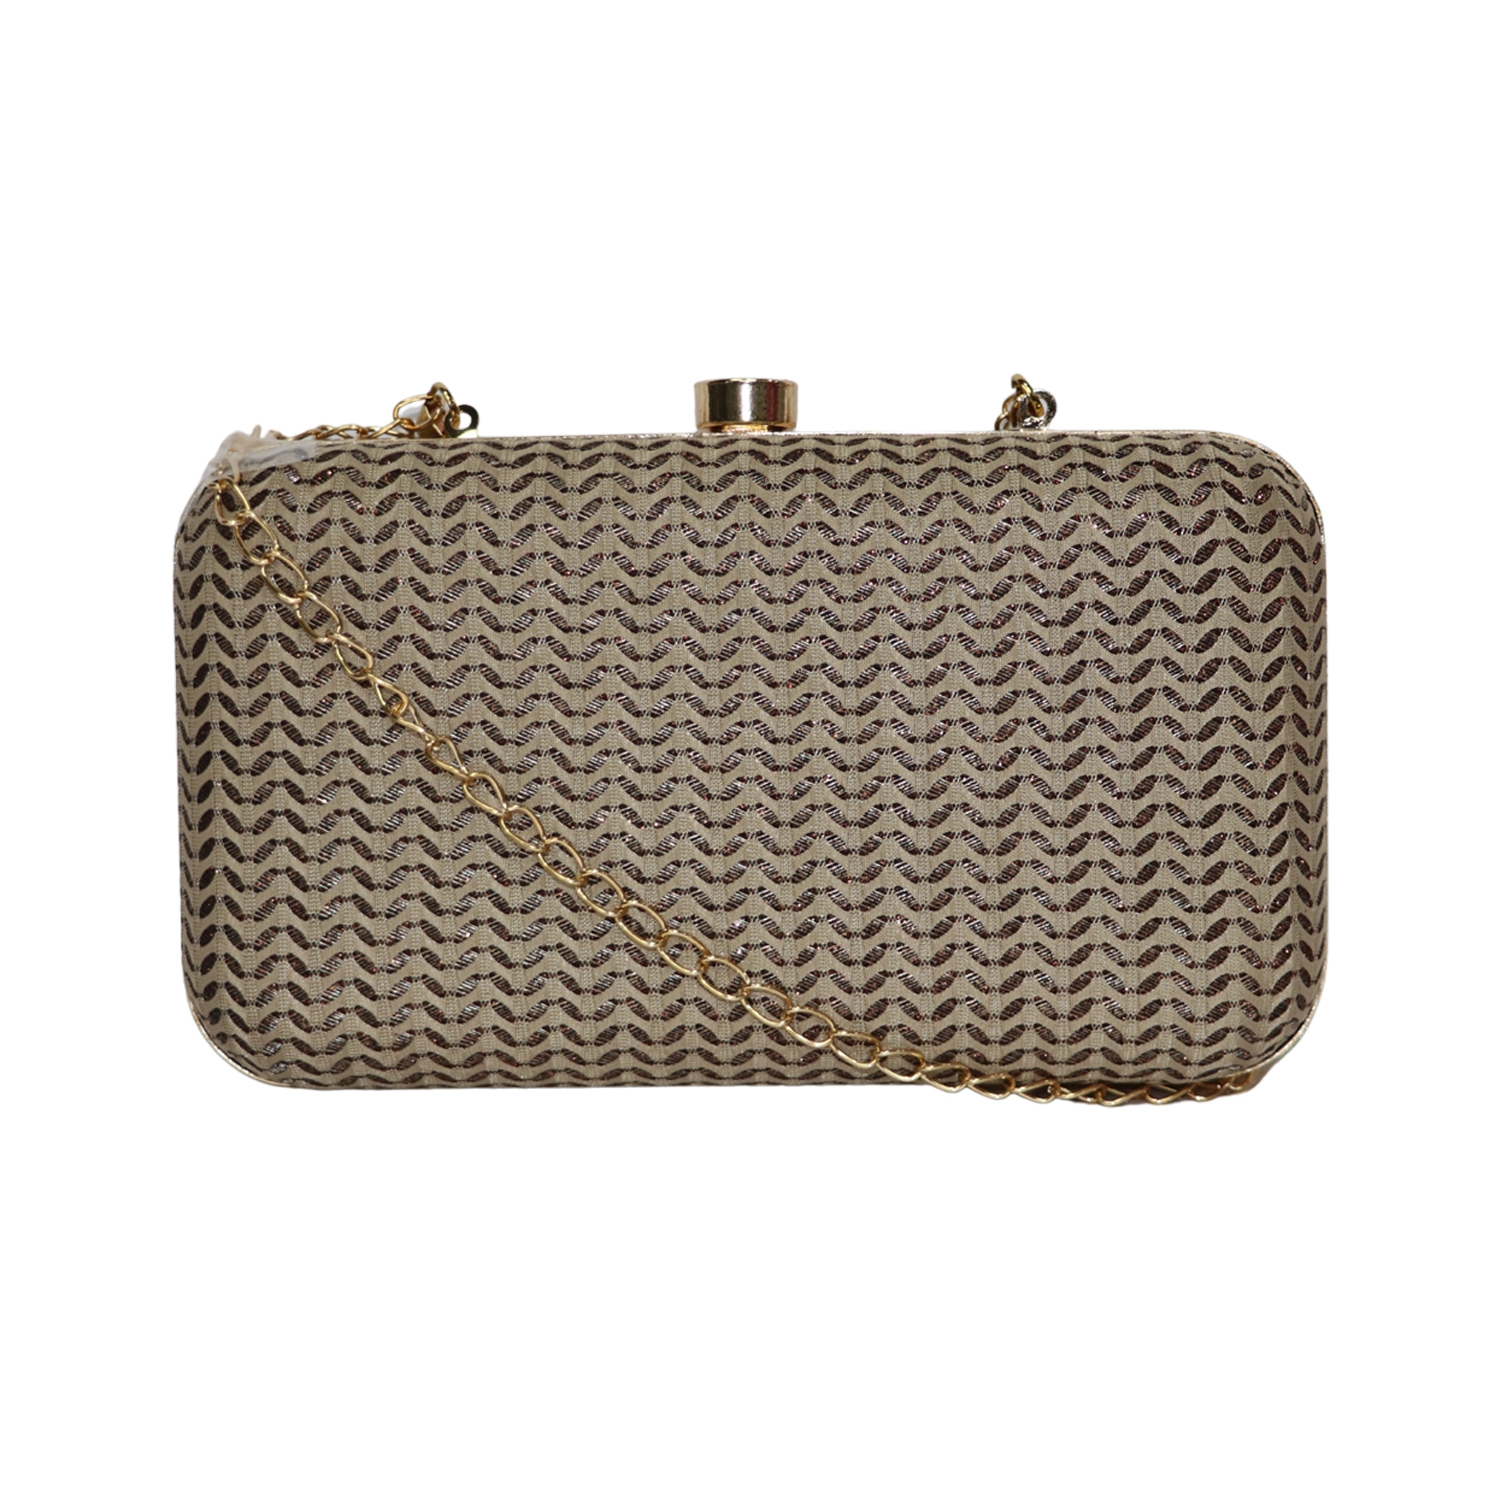 EMM | Wedding box clutch purse with handle